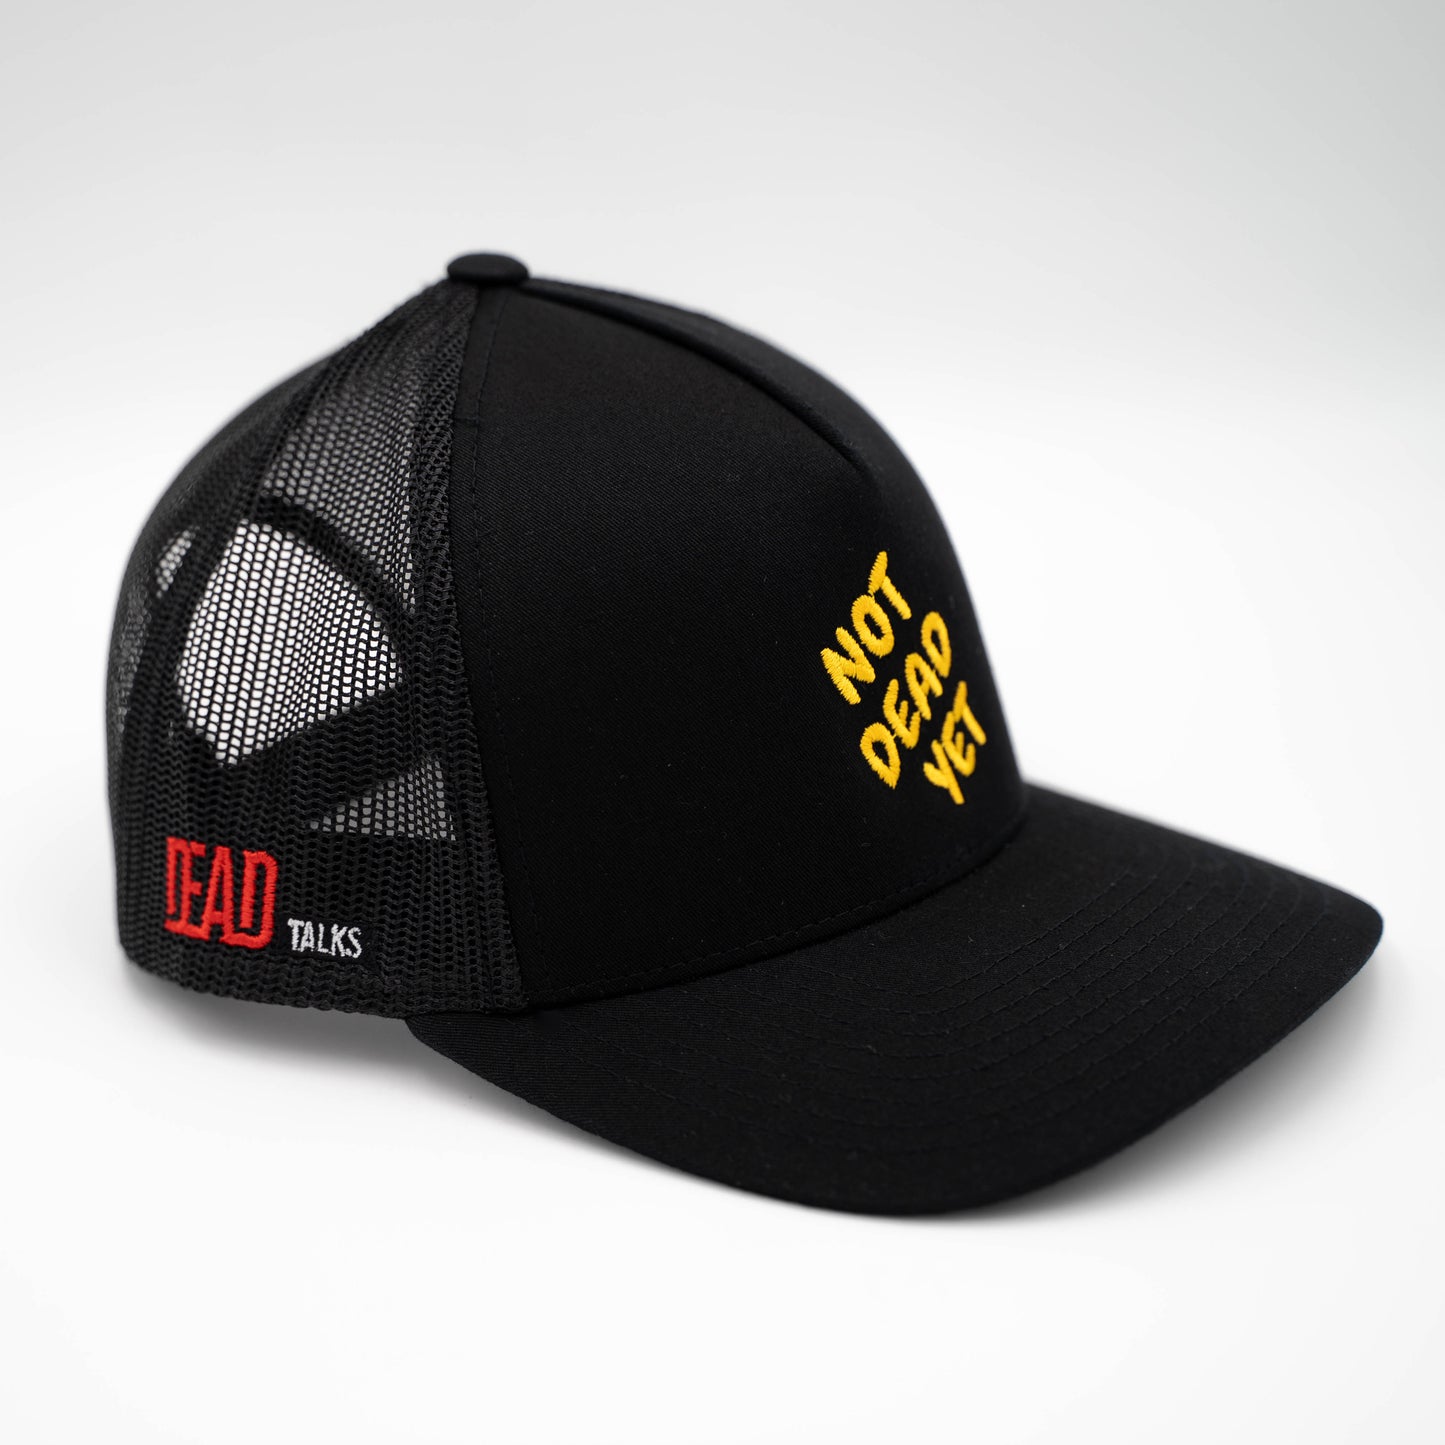 "Not Dead Yet" Trucker Hat